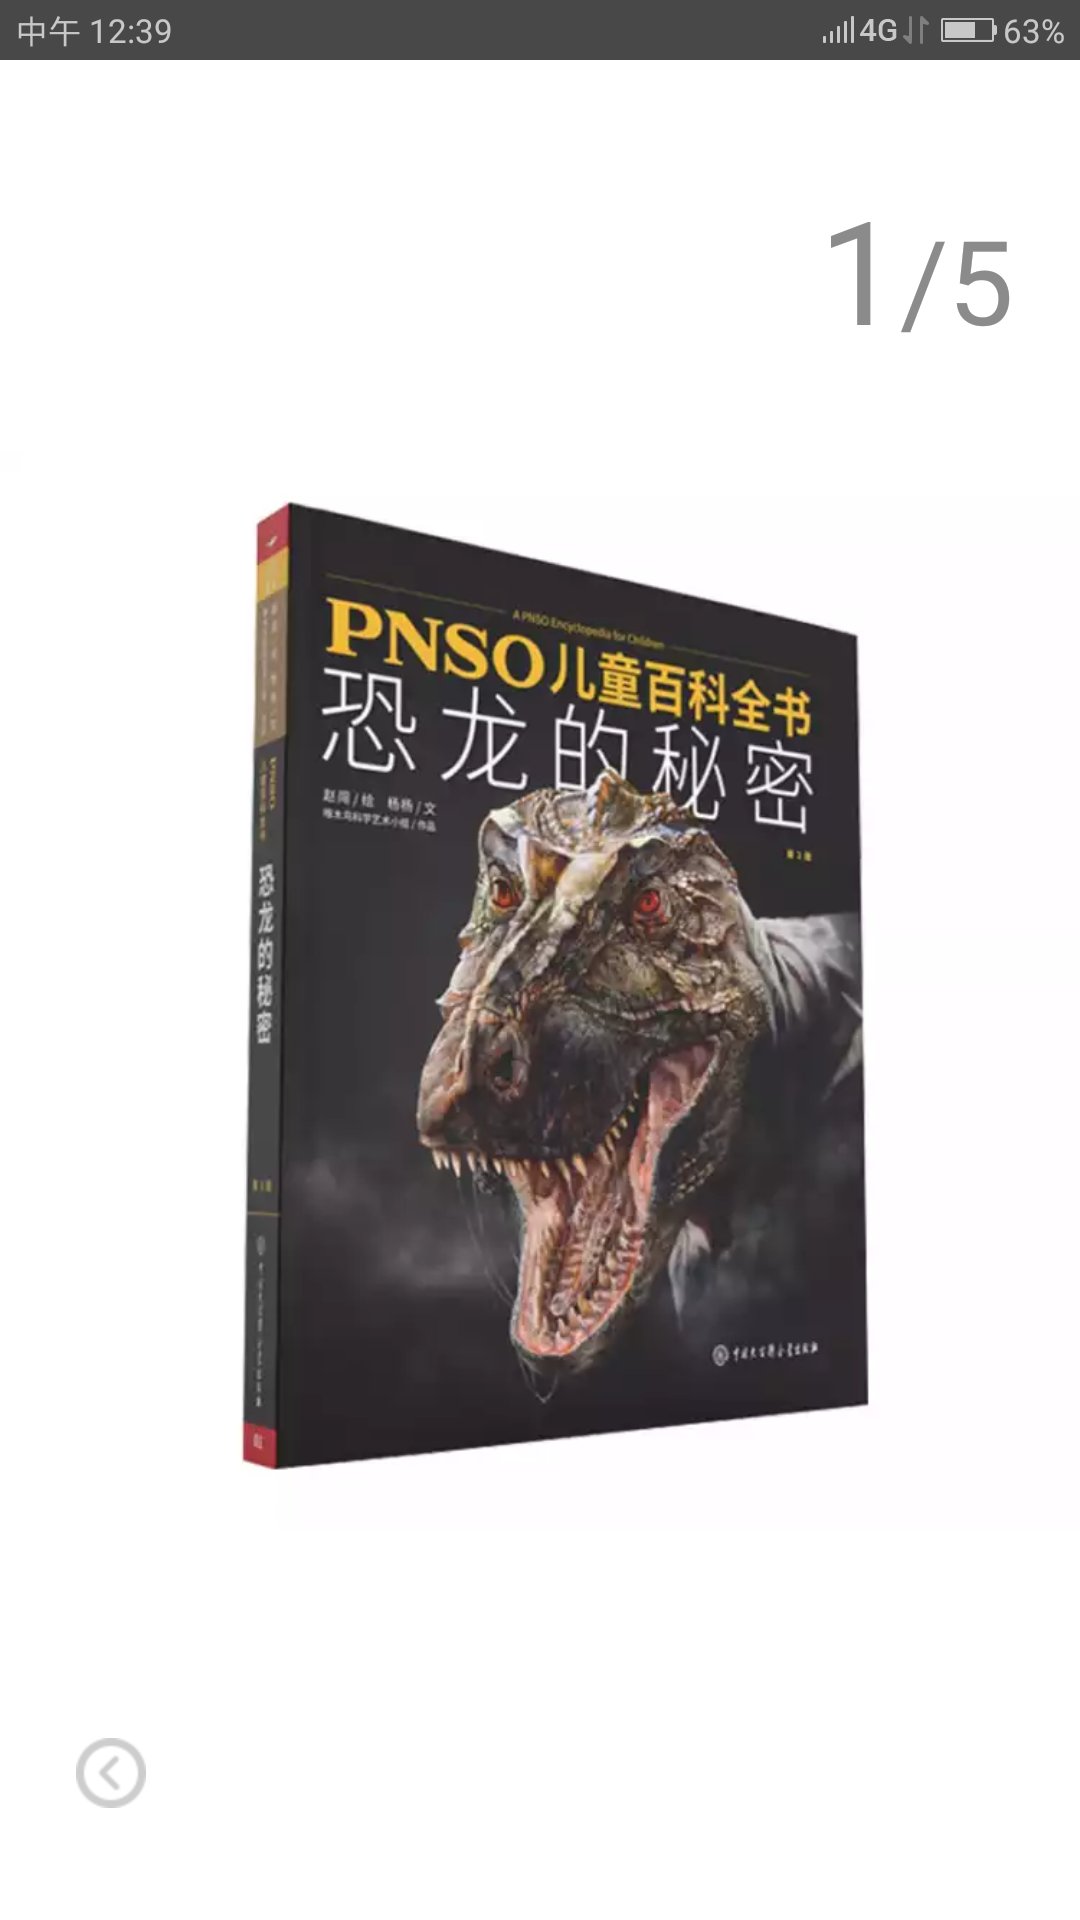 书的版面很大，印刷也清晰，介绍了好多没有听说过的恐龙